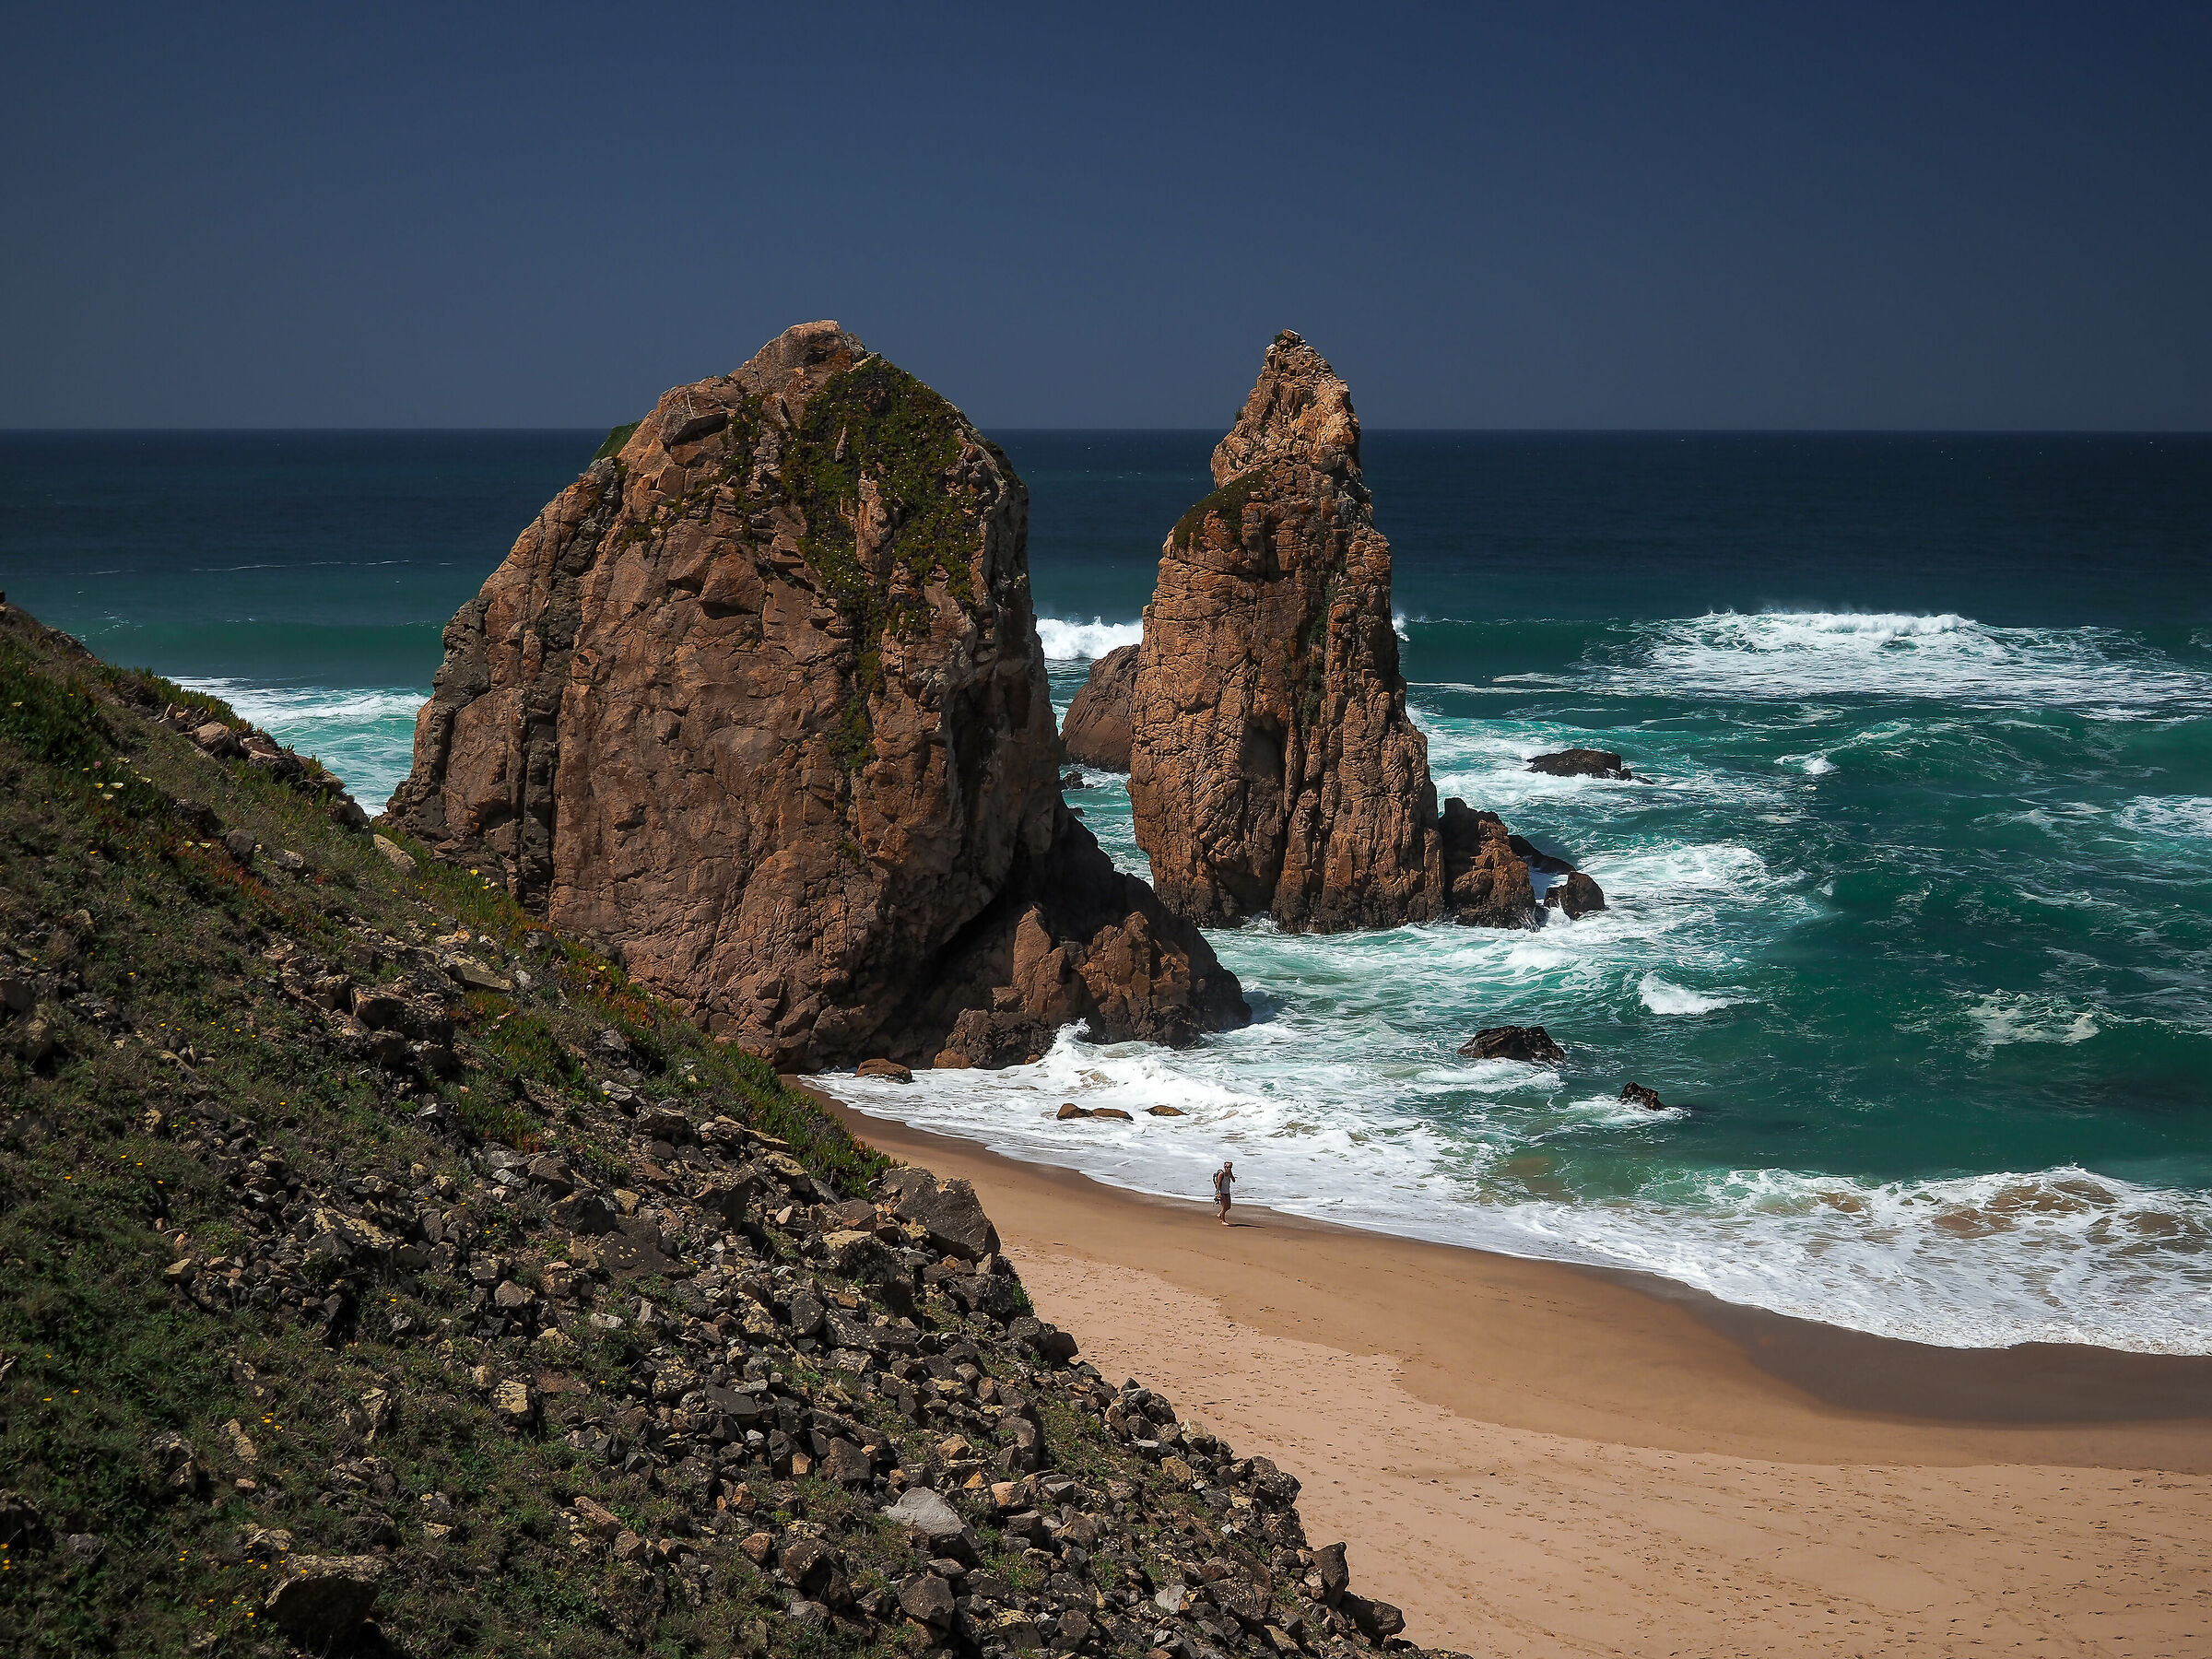 Praia do Guincho, strolling along the ocean...